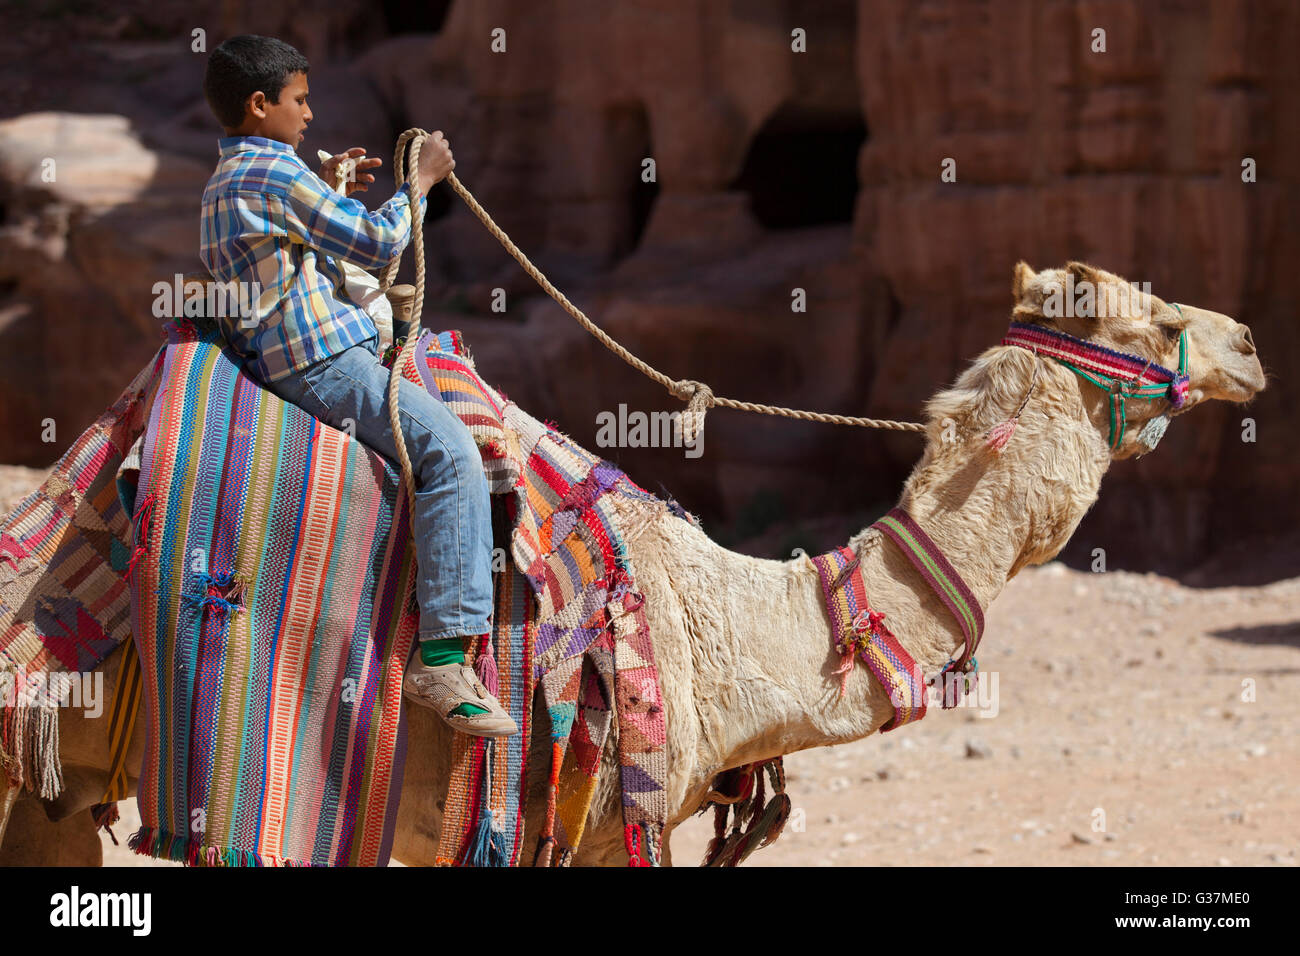 Un jeune bédouin à cheval sur un dromadaire à Pétra, également connu sous le nom de « ville rose », Jordanie, Moyen-Orient. Banque D'Images